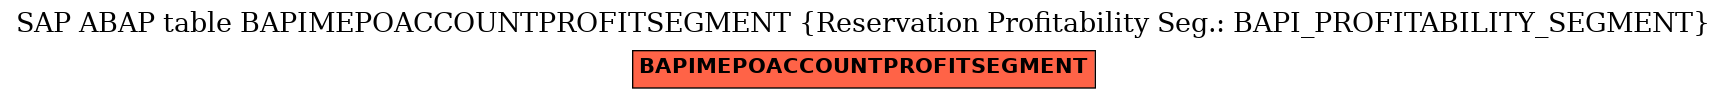 E-R Diagram for table BAPIMEPOACCOUNTPROFITSEGMENT (Reservation Profitability Seg.: BAPI_PROFITABILITY_SEGMENT)